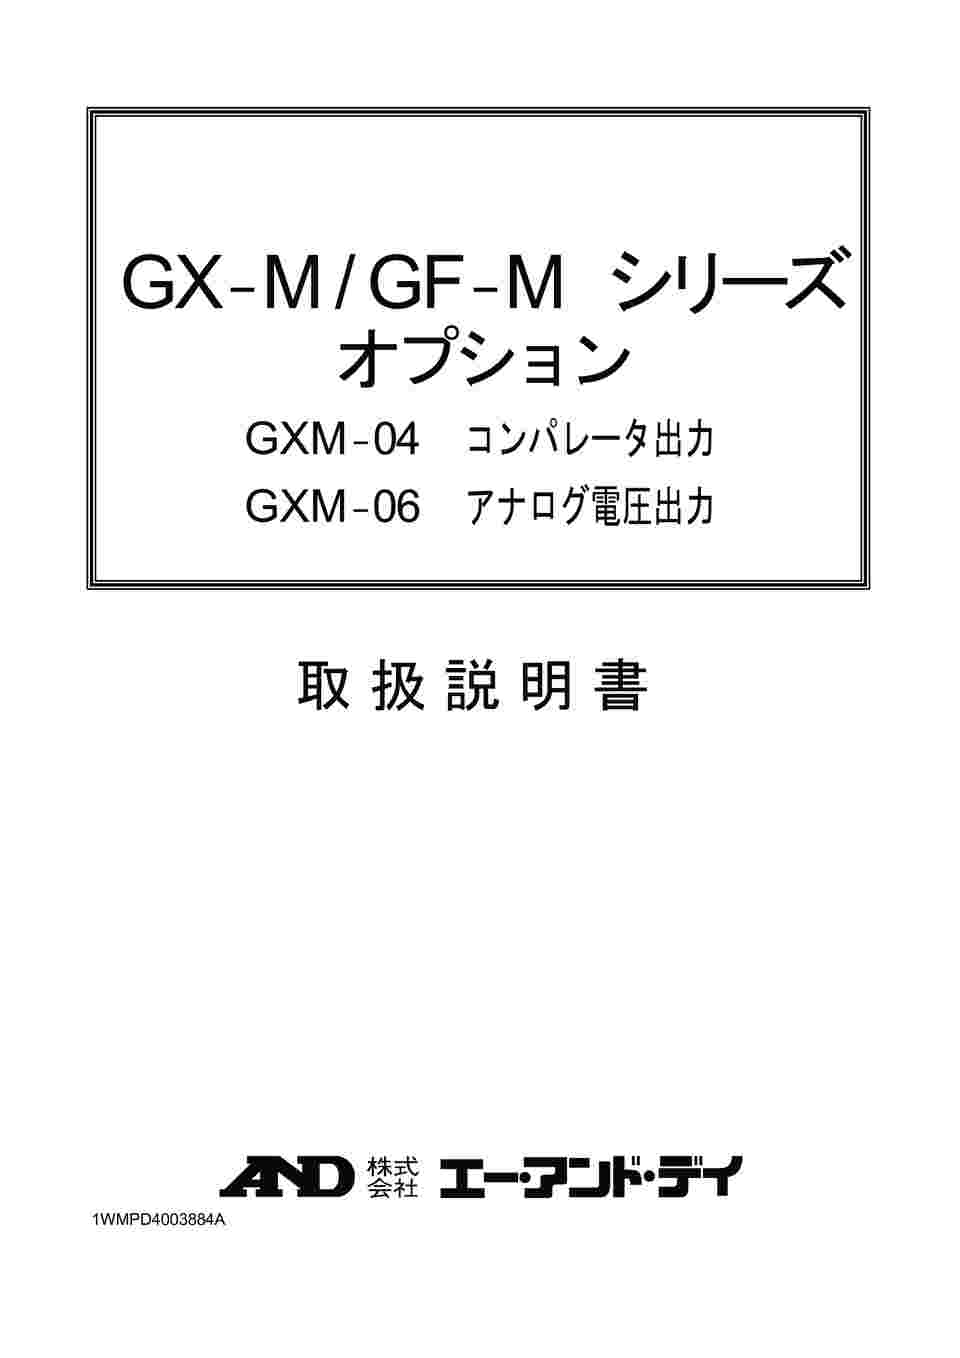 65-5522-43 分銅内蔵型 防塵・防水型天びん GX-M、GF-Mシリーズ用